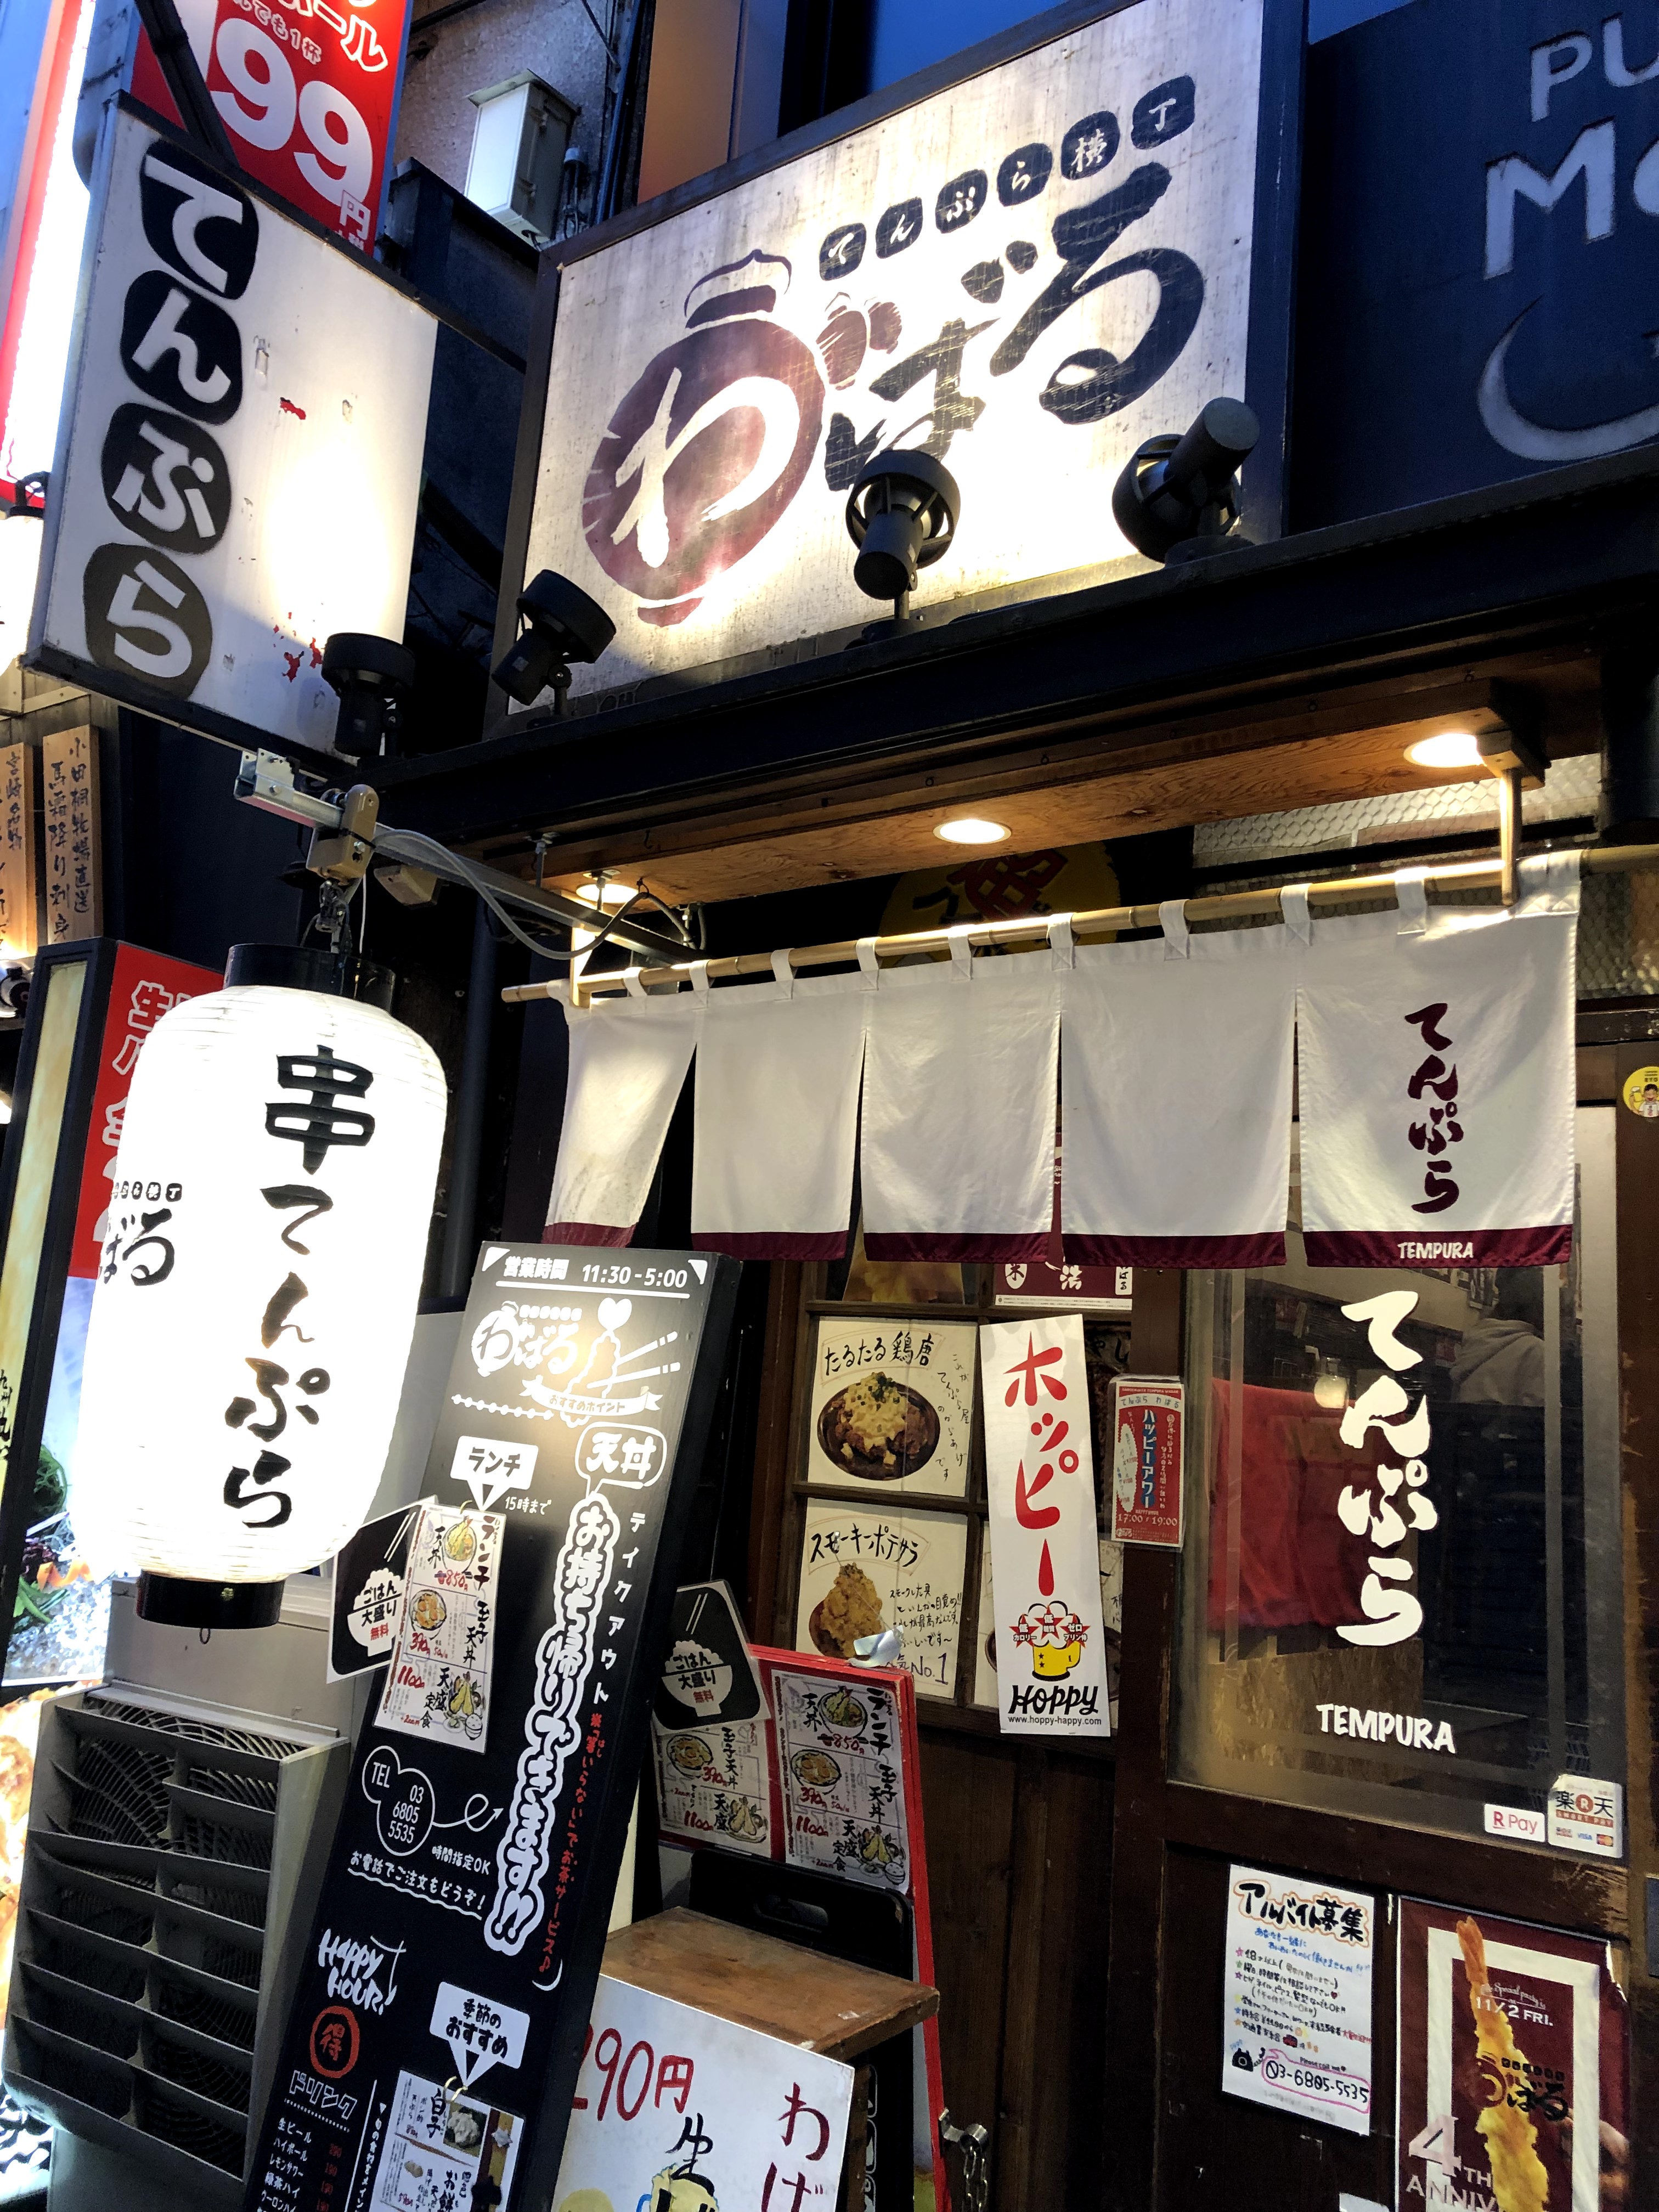 三軒茶屋 天ぷら横丁わばる 天ぷらで昼飲み 11時半から19時までハッピーアワー 3 45 ご飯を食べたら吹っ飛んだ